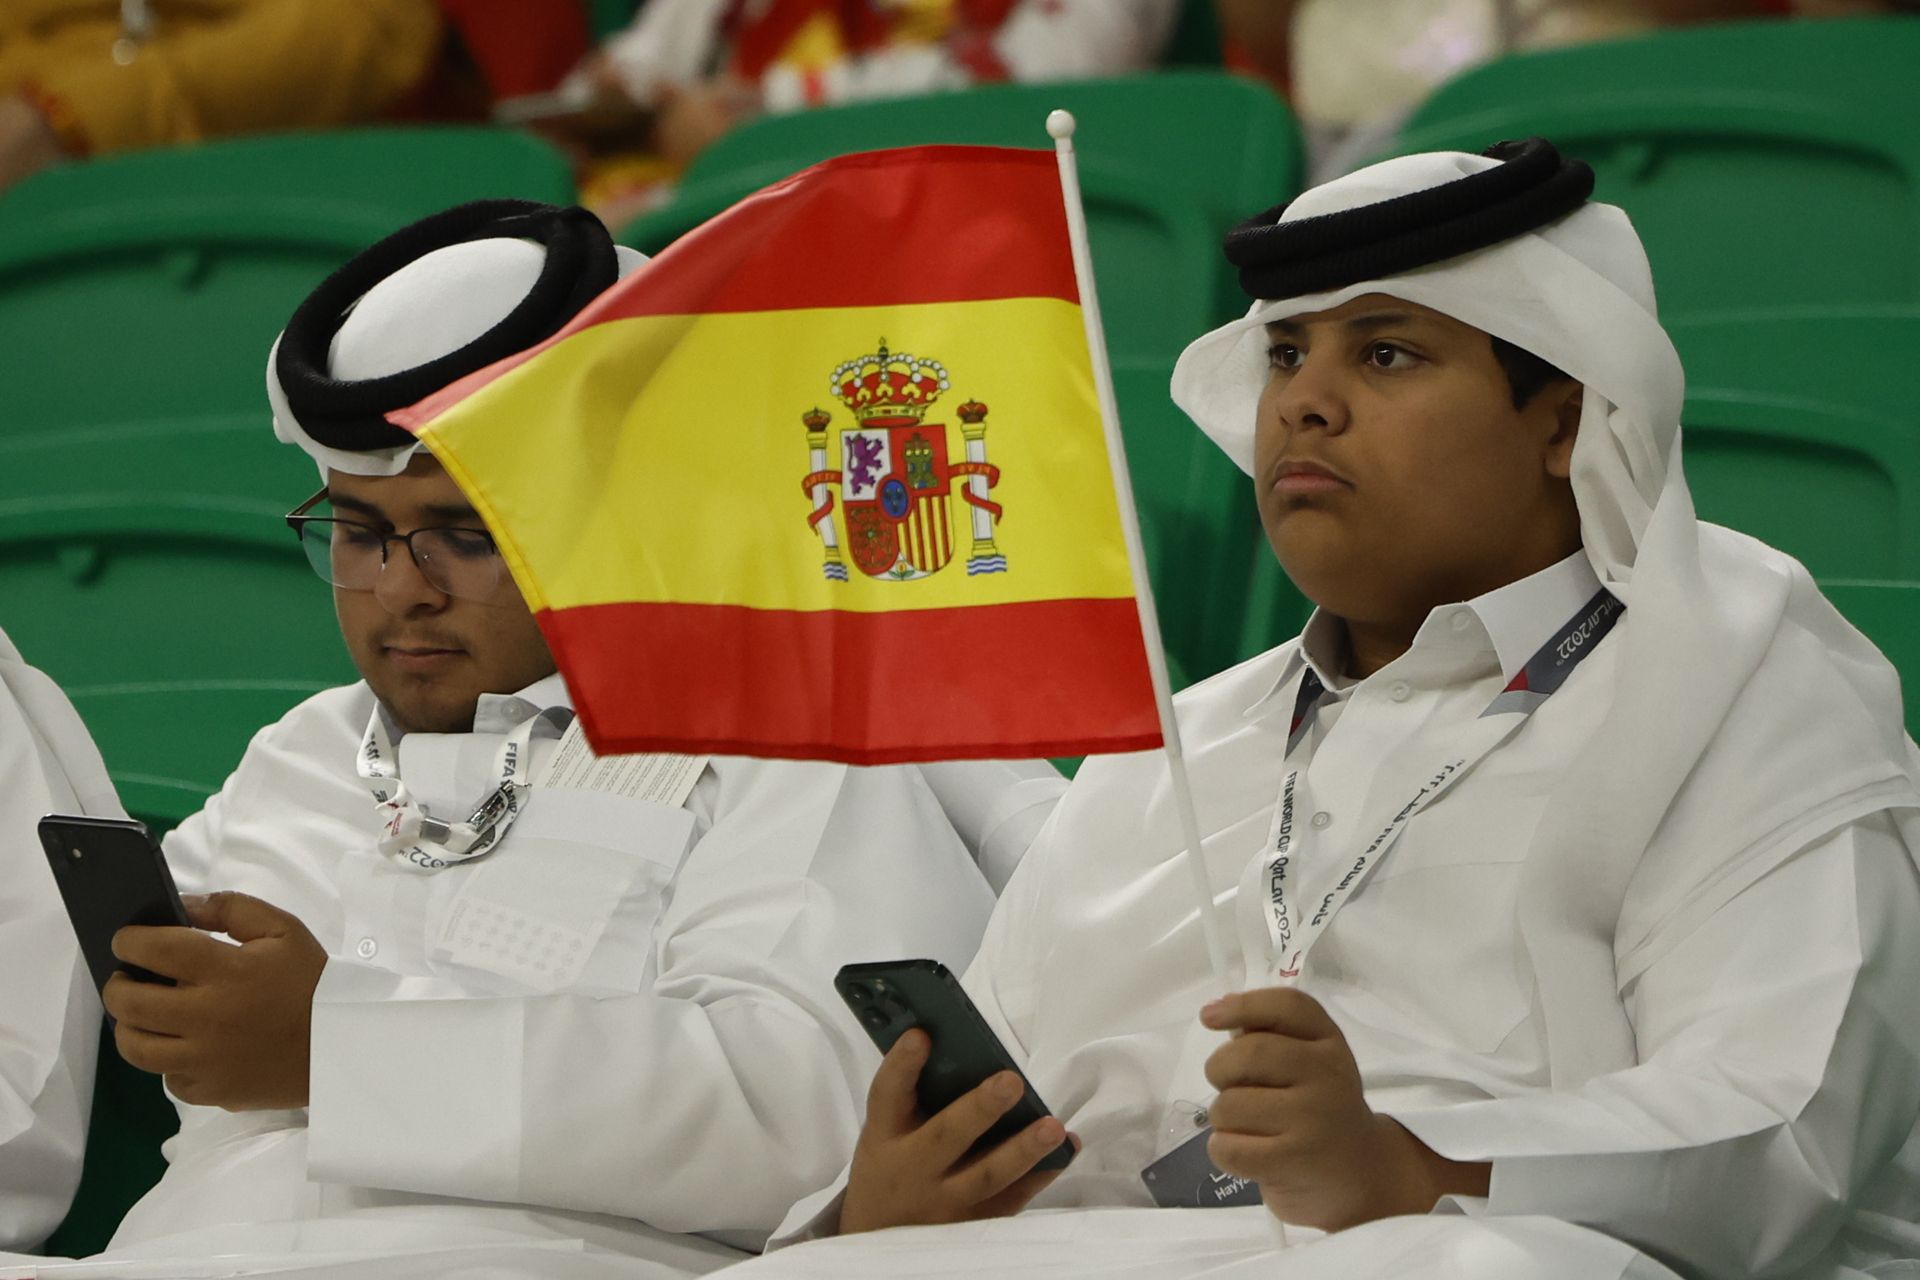 El colegio La Salle de Palma investigará el incidente con la bandera de España que acabó con la expulsión de 32 alumnos